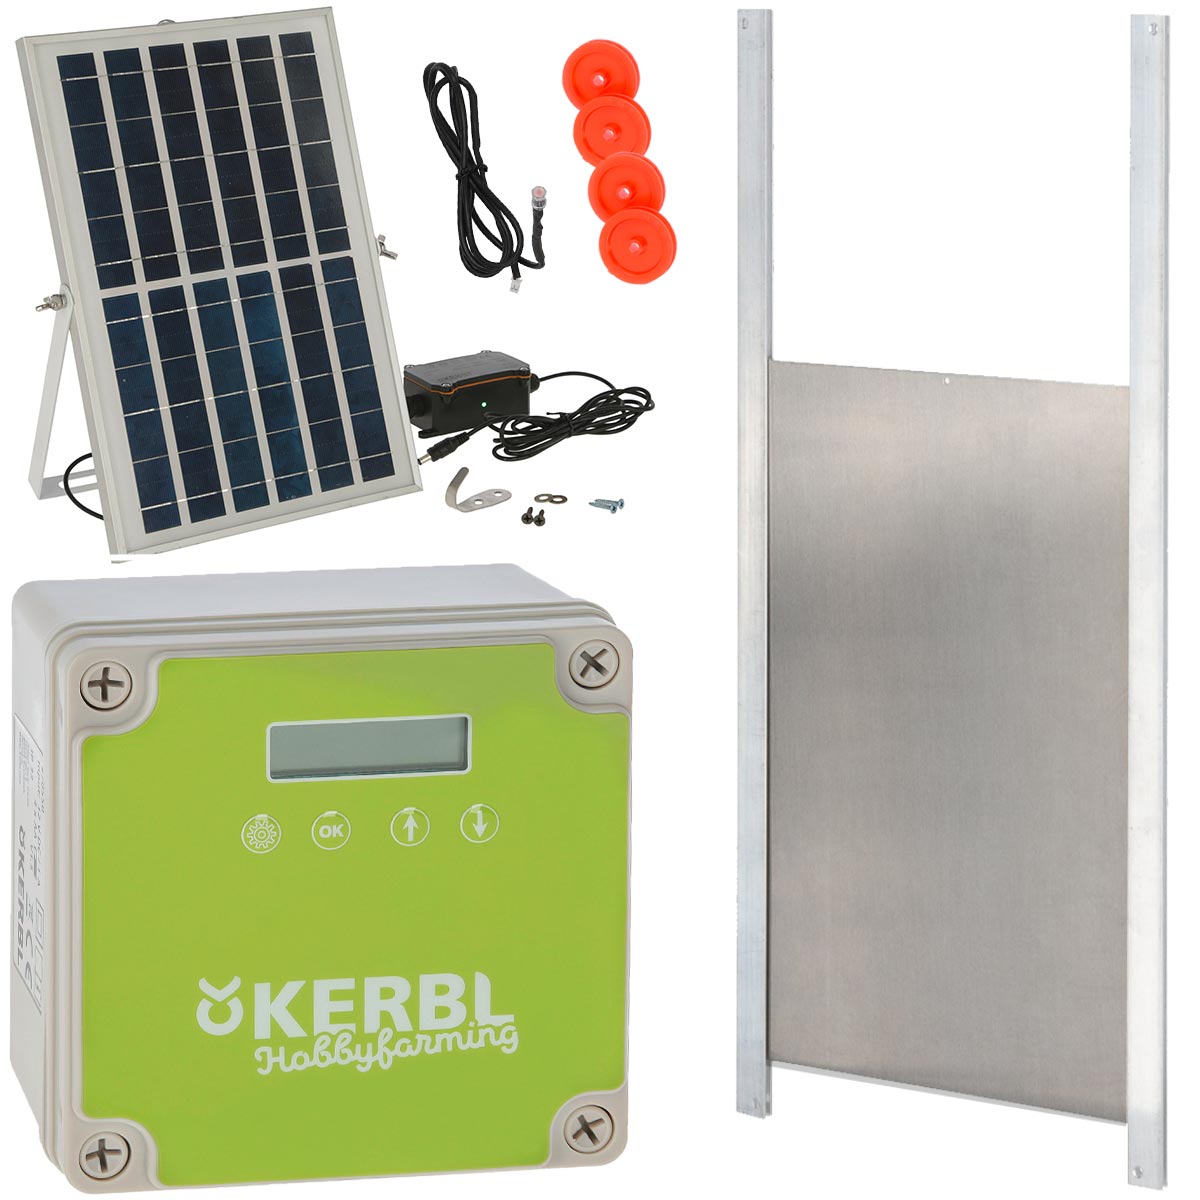 Kerbl Porta automatica per pollaio fotovoltaica